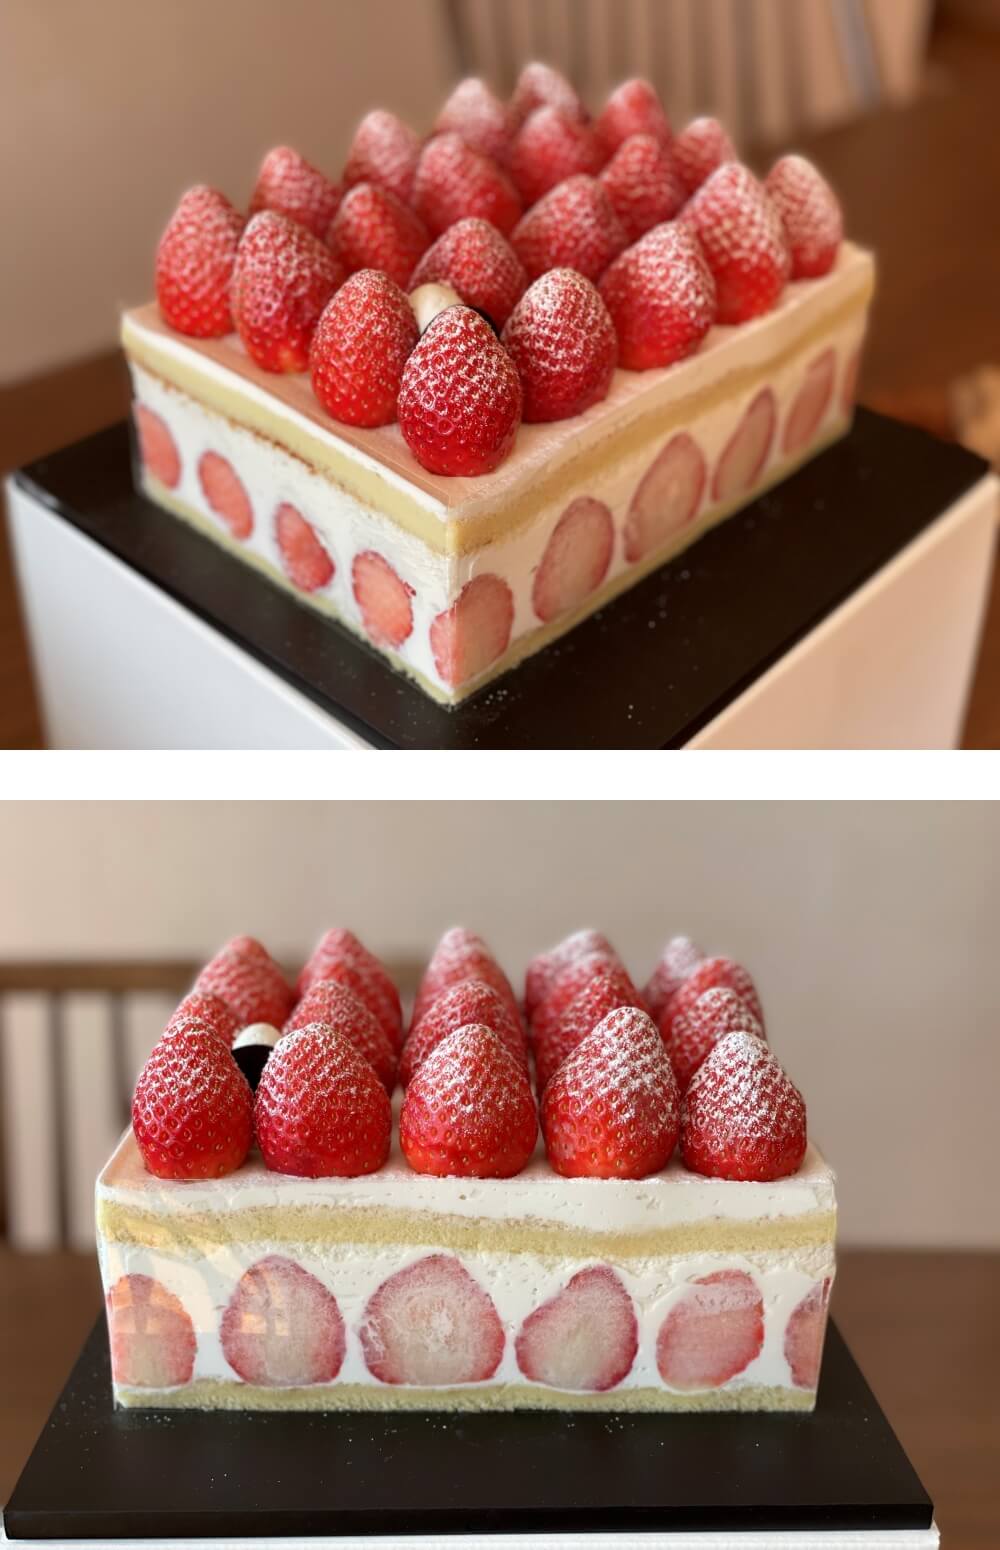 델리카한스 - 프리미엄 딸기 케이크 전체 모습